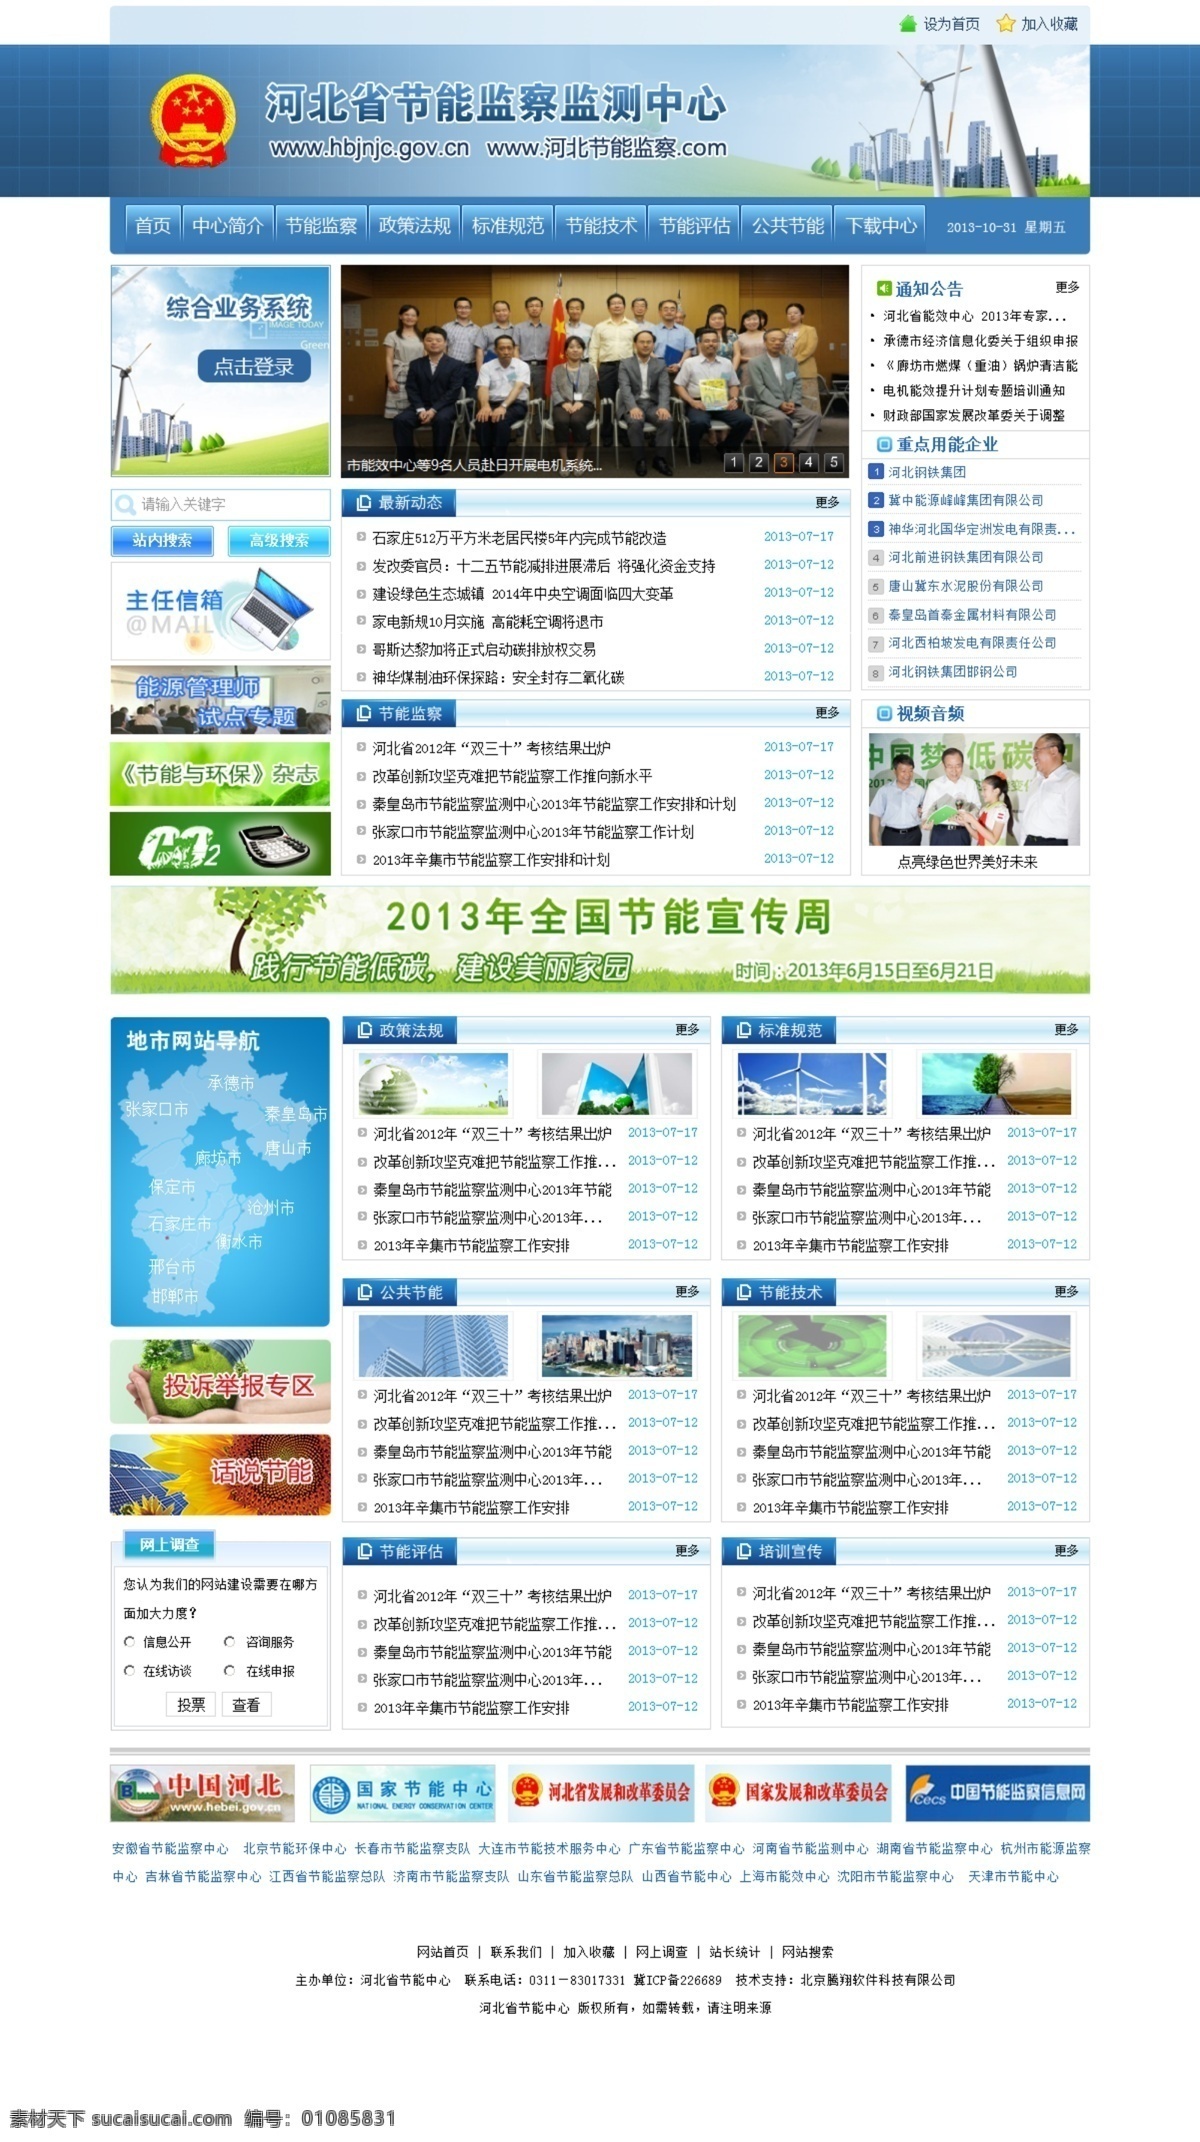 政府网站模版 节能 减排 环保 蓝色 企业 模版下载 河北 大气 科技 原创包 web 界面设计 中文模板